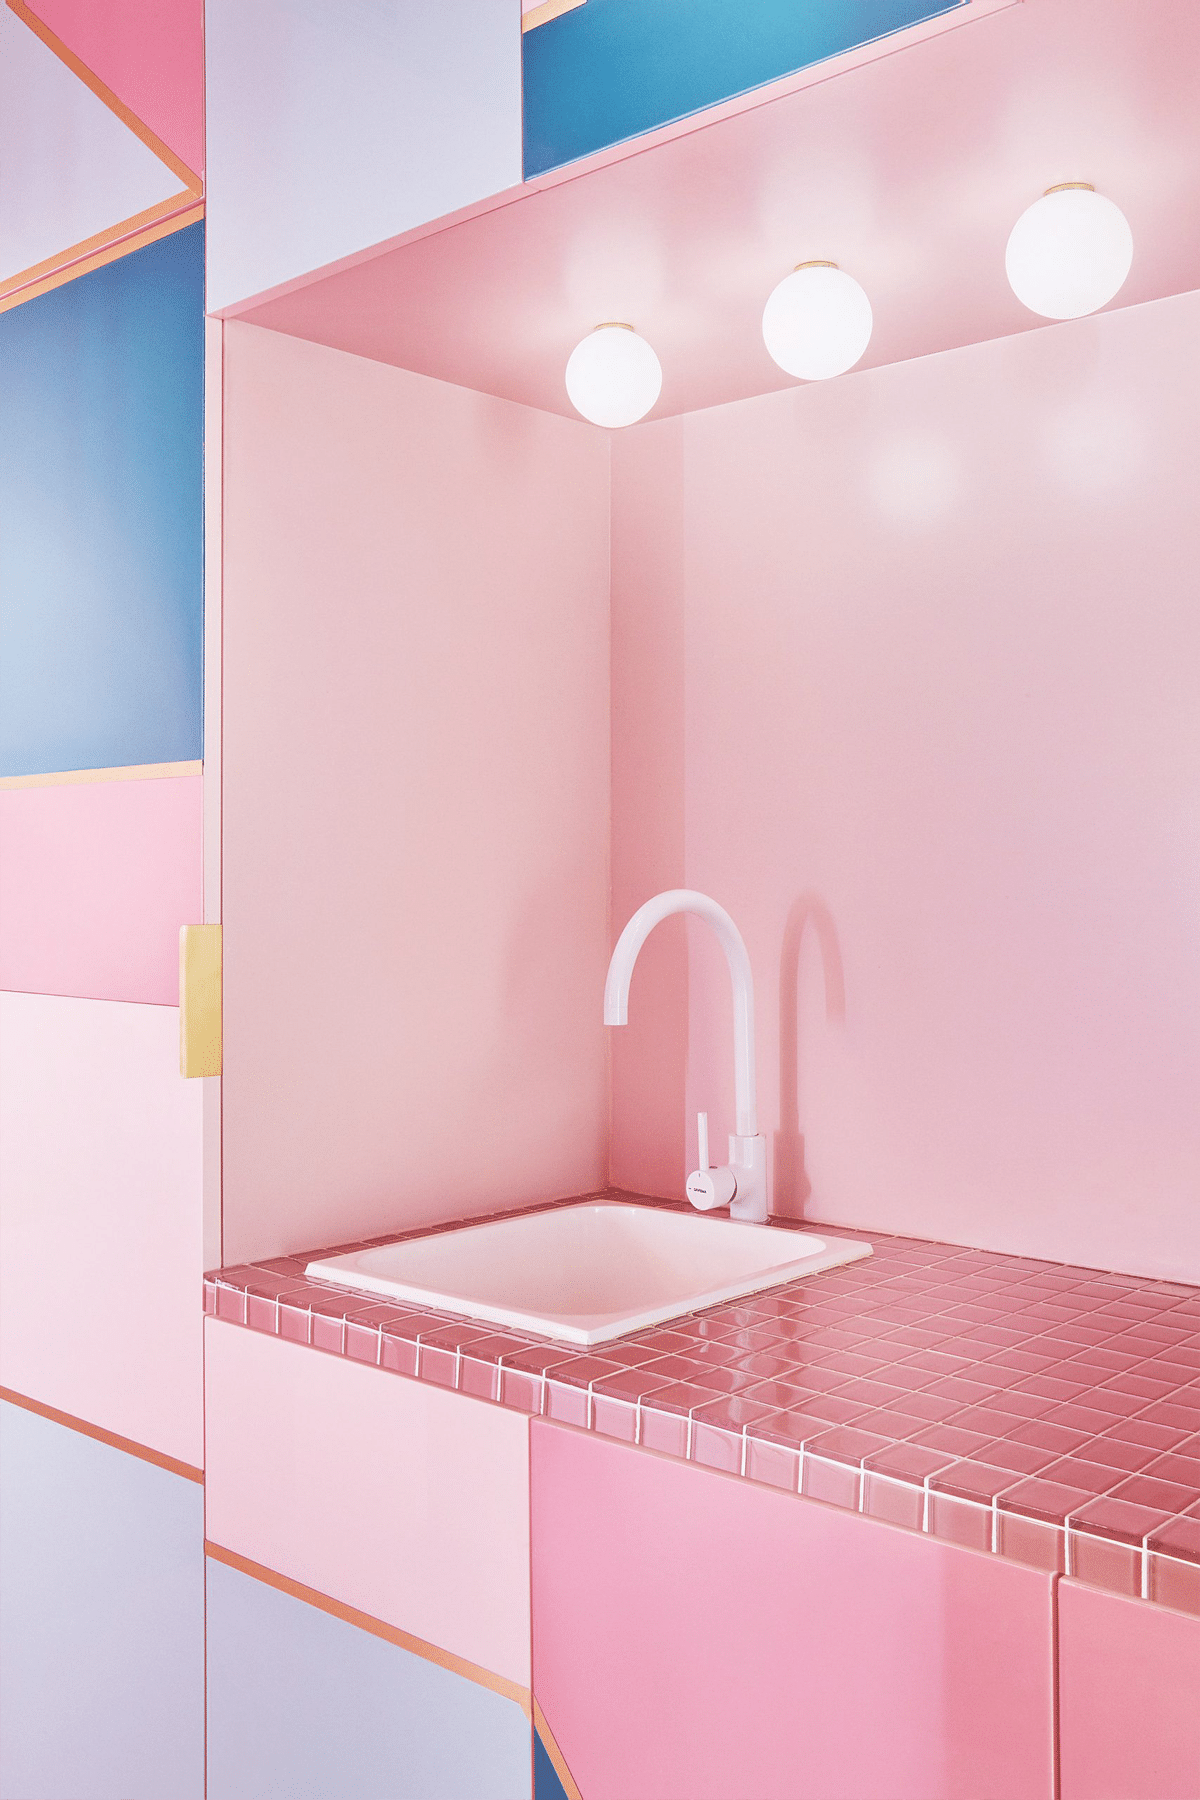 Departamento rosa en Madrid diseñado por Patricia Bustos Studios